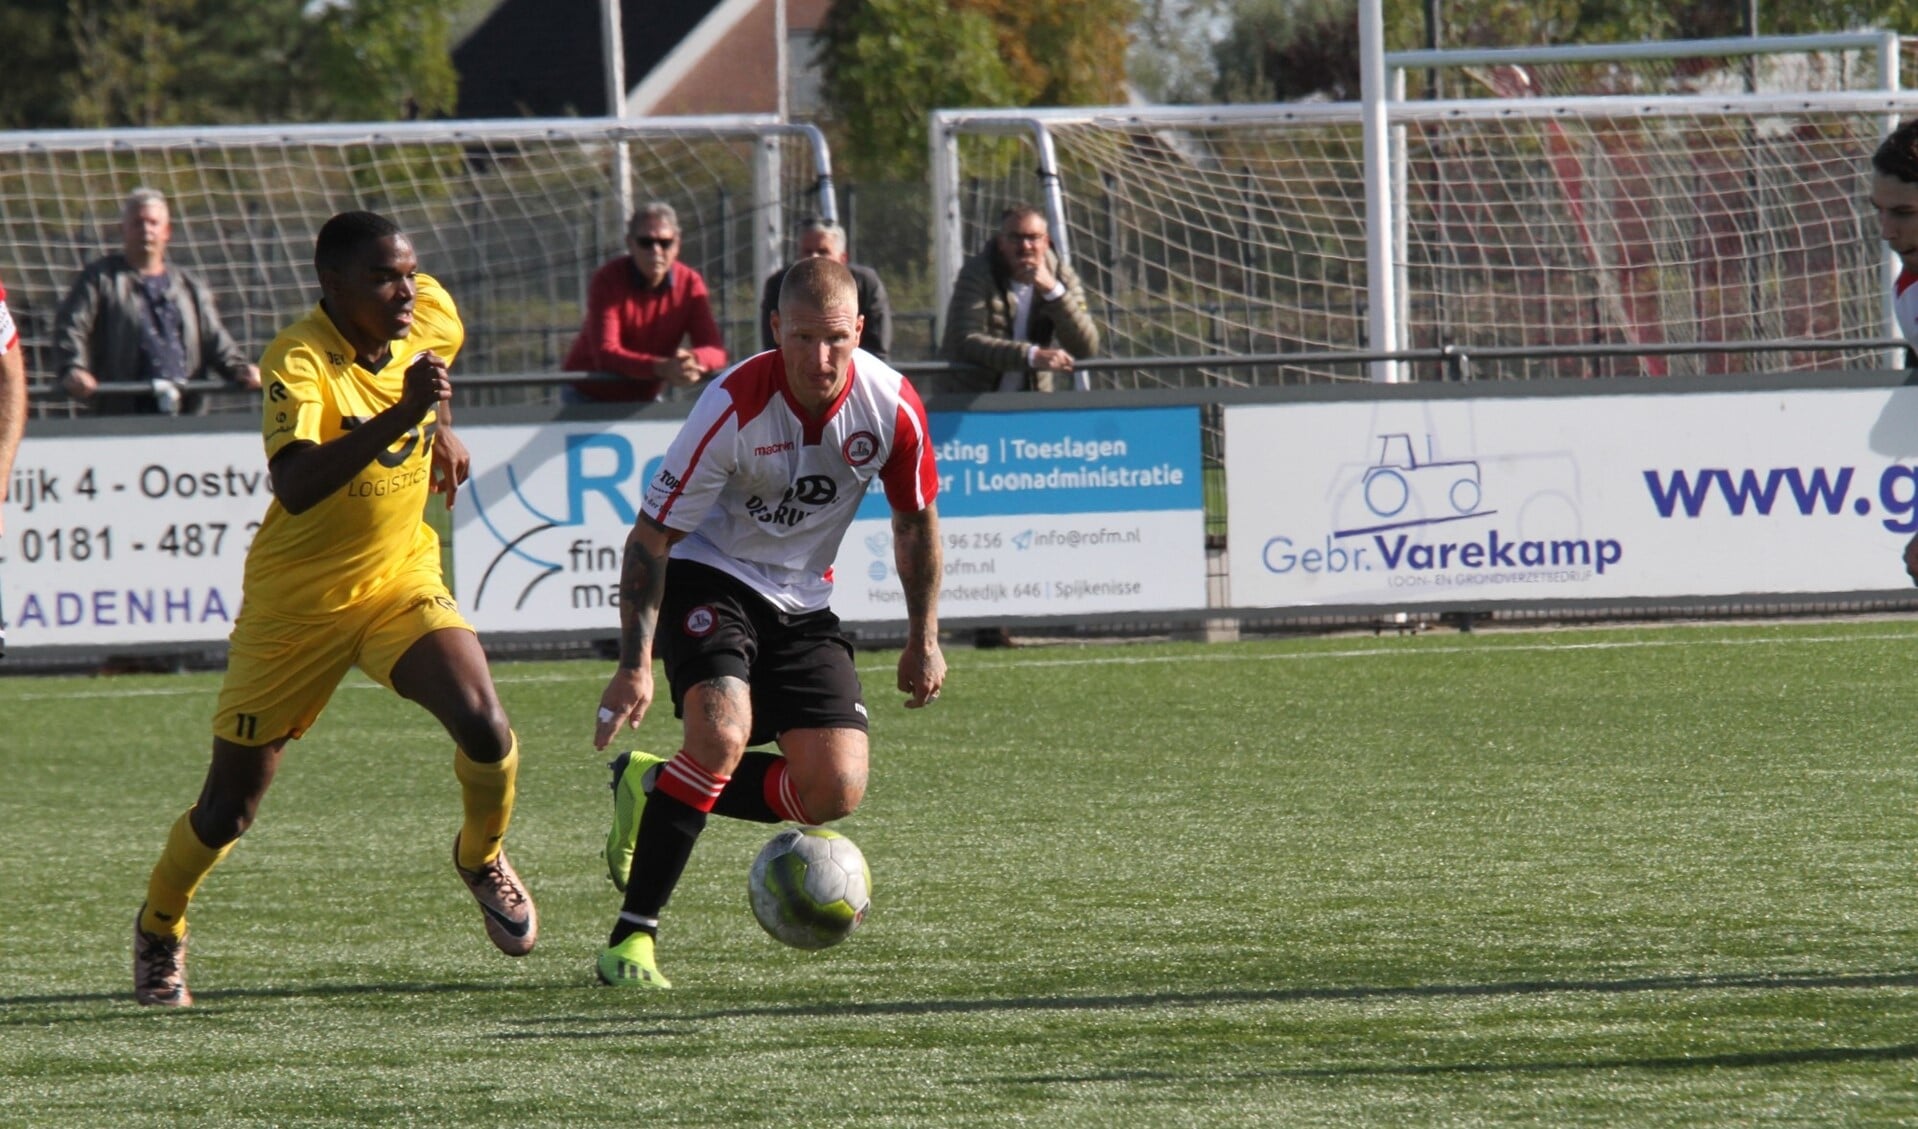 Marvin Godschalk scoorde de 3-2 voor Brielle tegen Oostkapelle. (Archieffoto: Wil van Balen).